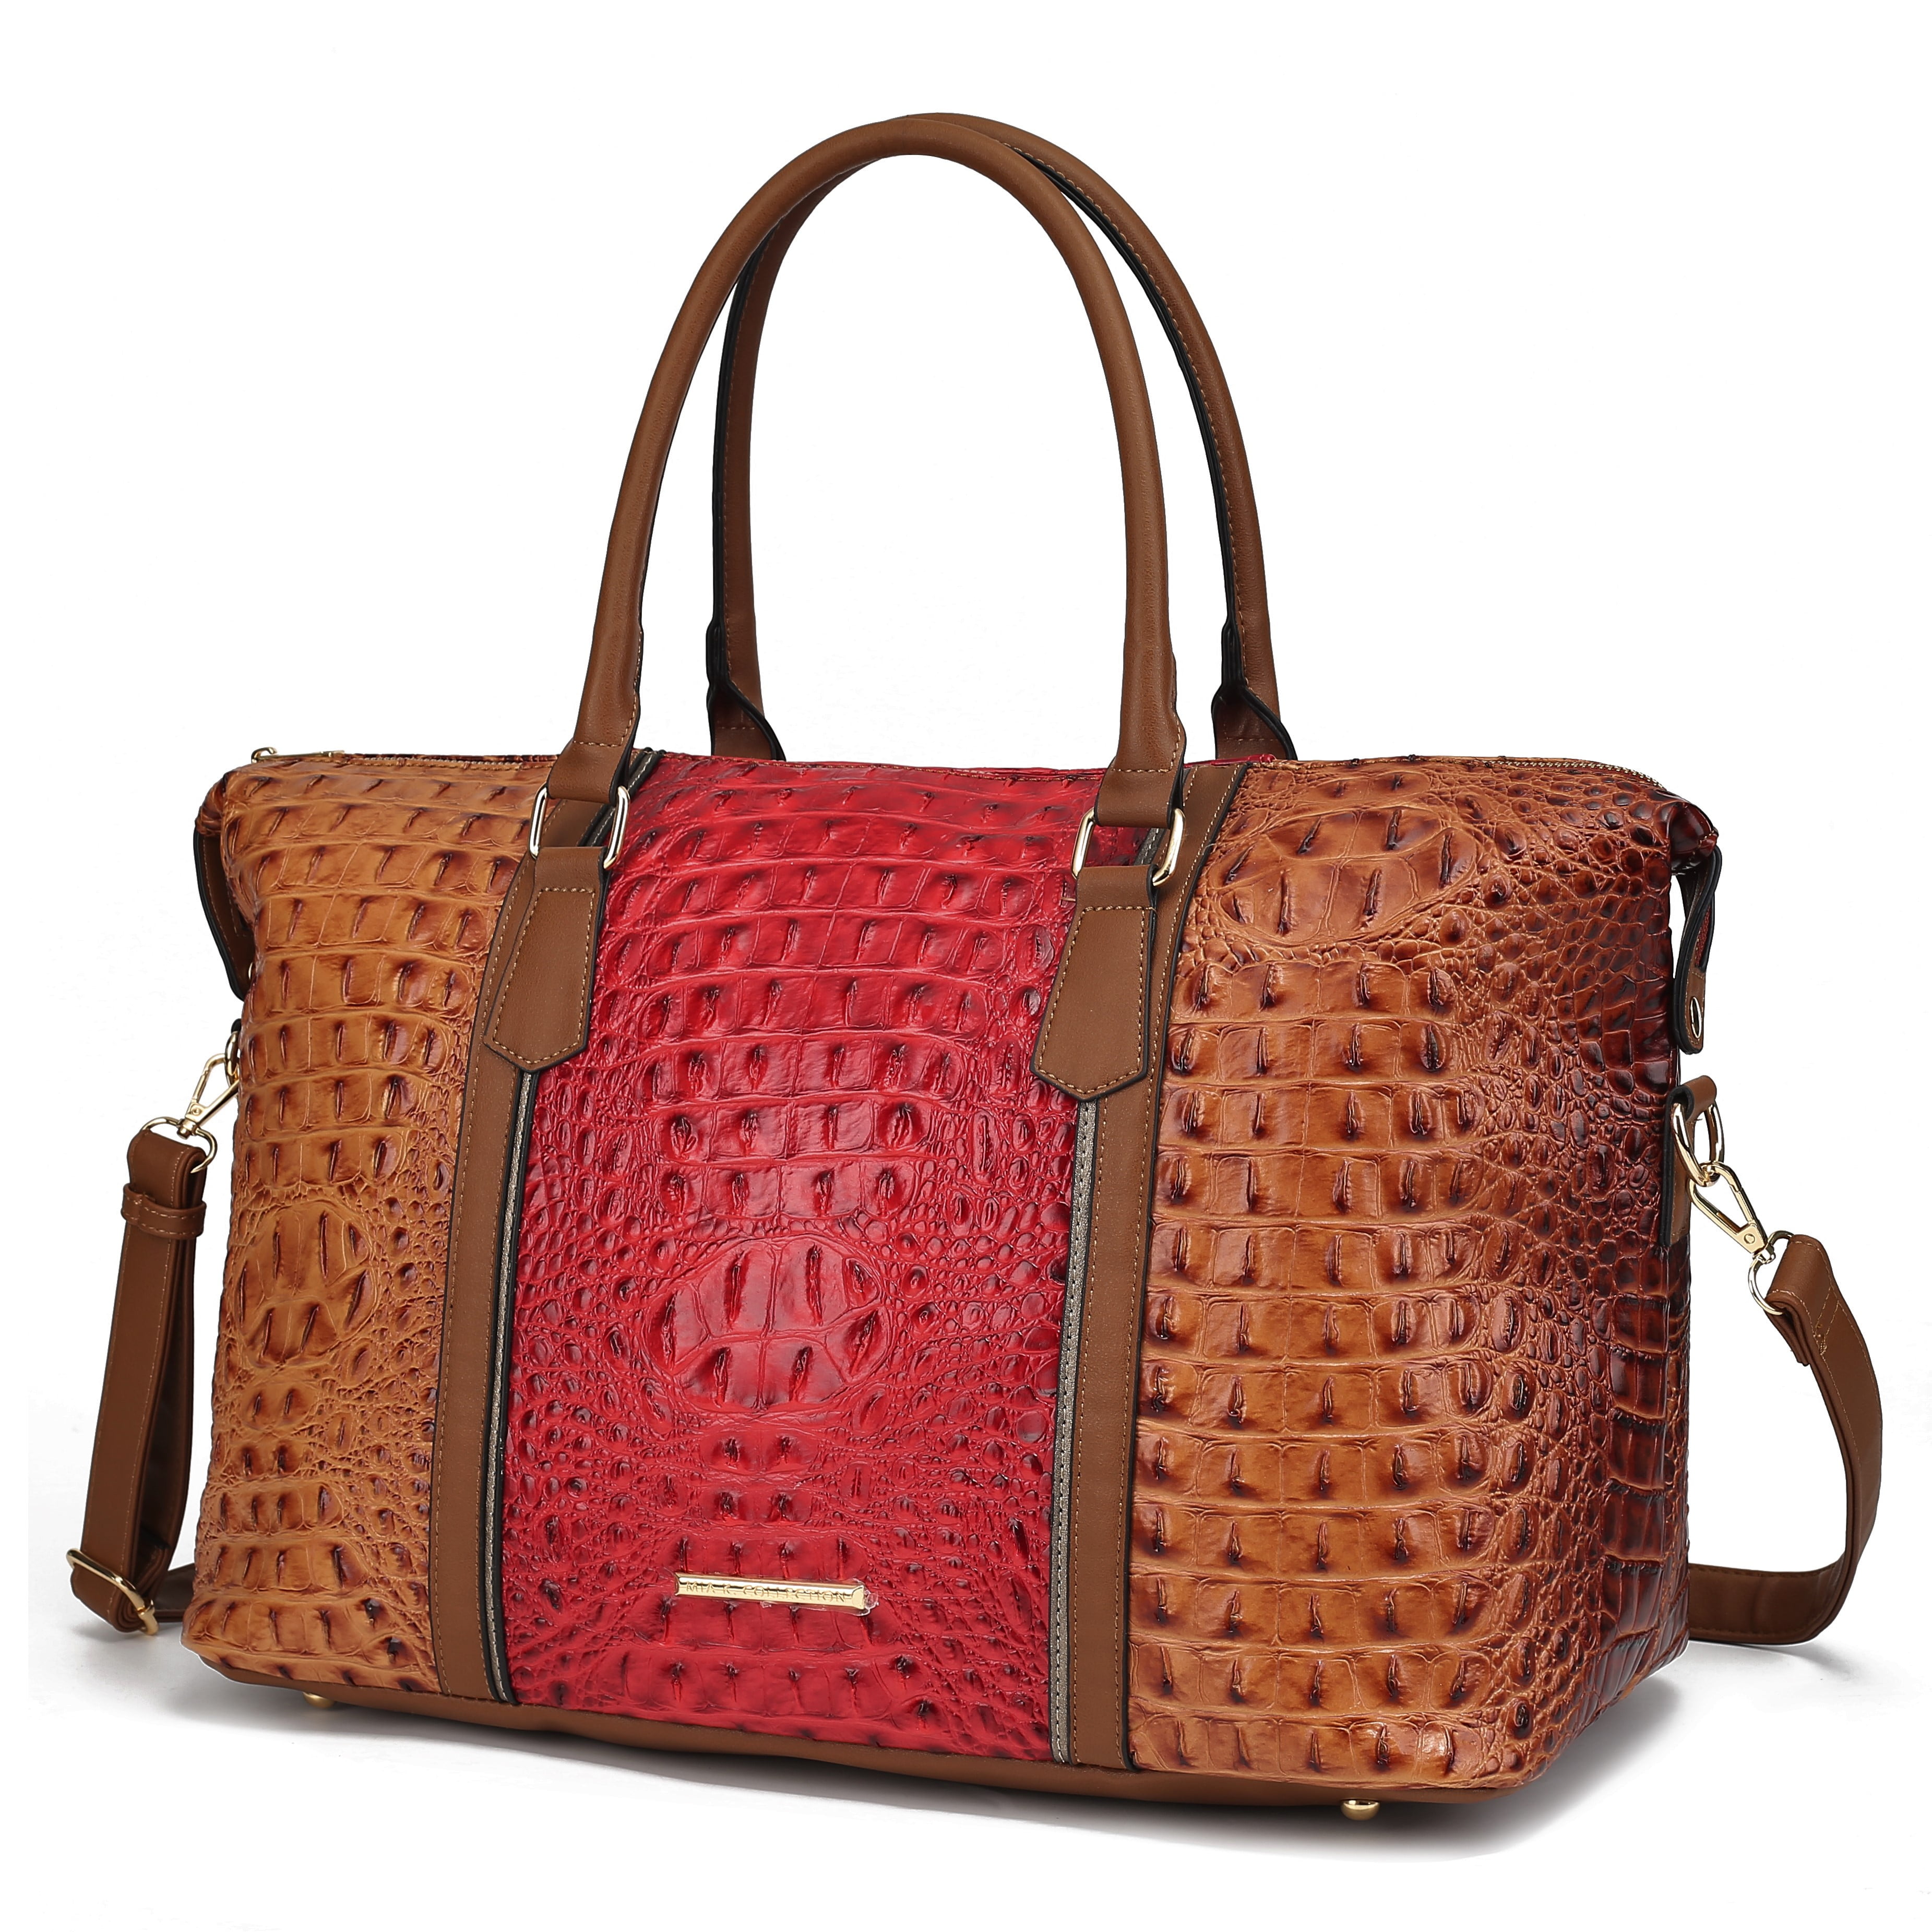 3 PCS Luxe Faux Crocodile Leather Handbag Set, Large Tote, Shoulder Bag,  Purse Wallet (Brown)